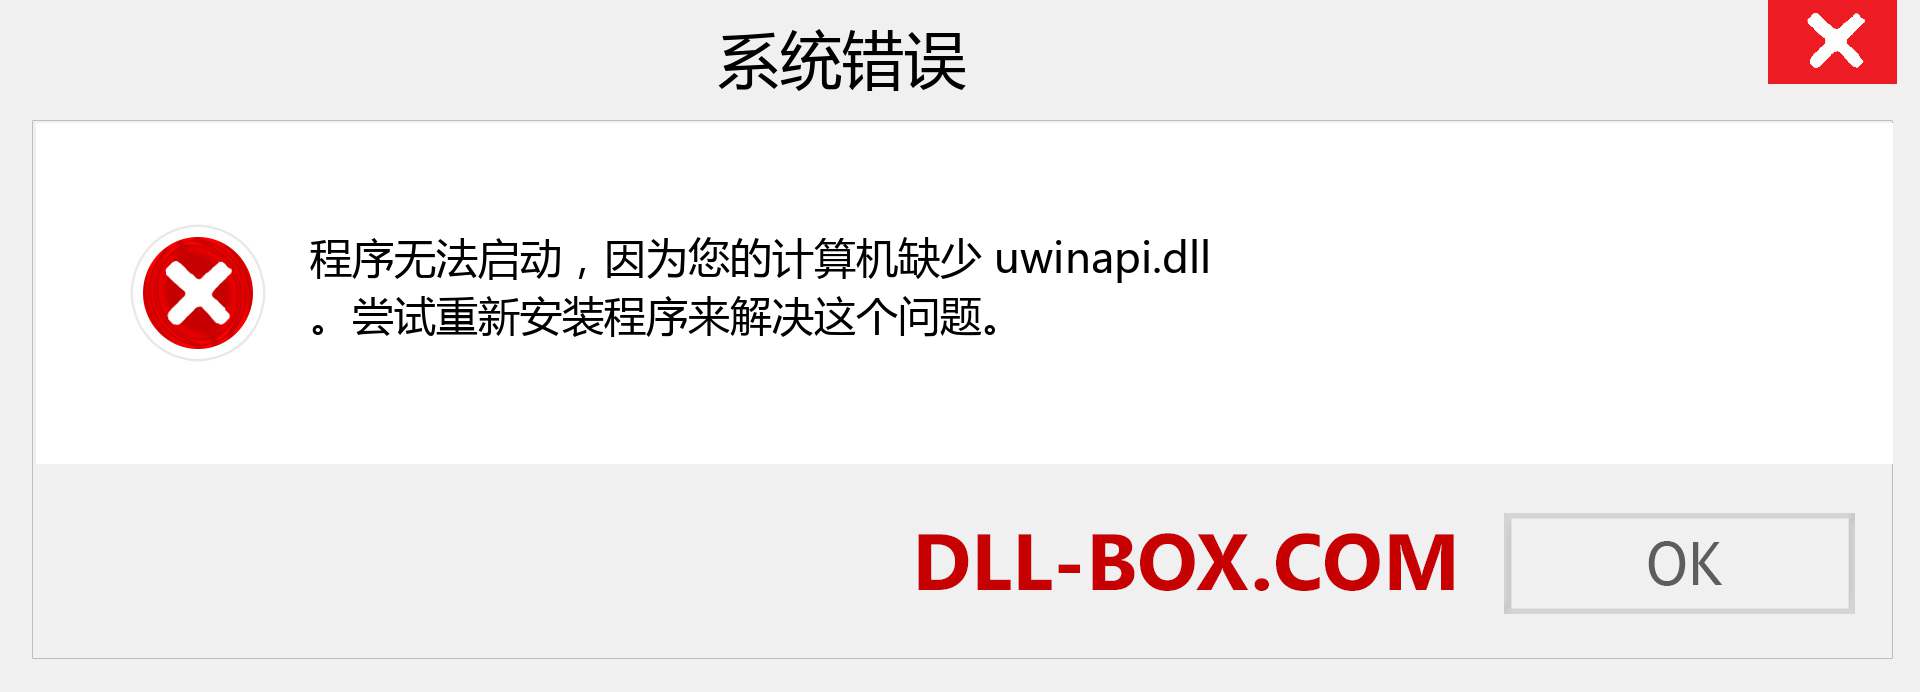 uwinapi.dll 文件丢失？。 适用于 Windows 7、8、10 的下载 - 修复 Windows、照片、图像上的 uwinapi dll 丢失错误